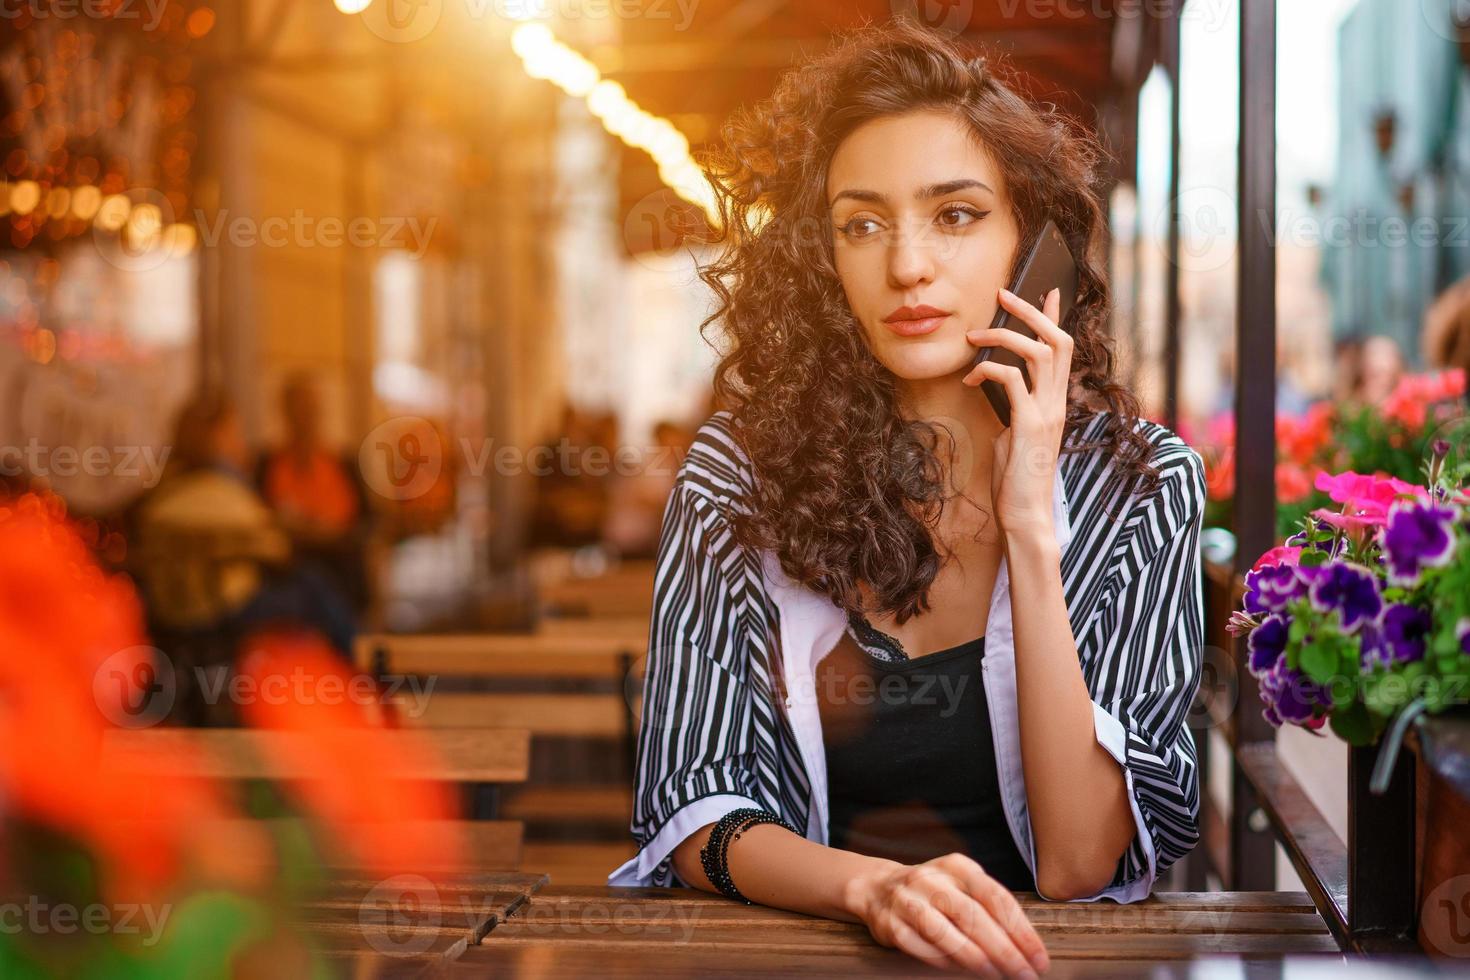 retrato de una mujer joven en un café en la calle sentada en una mesa y hablando por teléfono. concepto de mujer de belleza de estilo de vida. foto